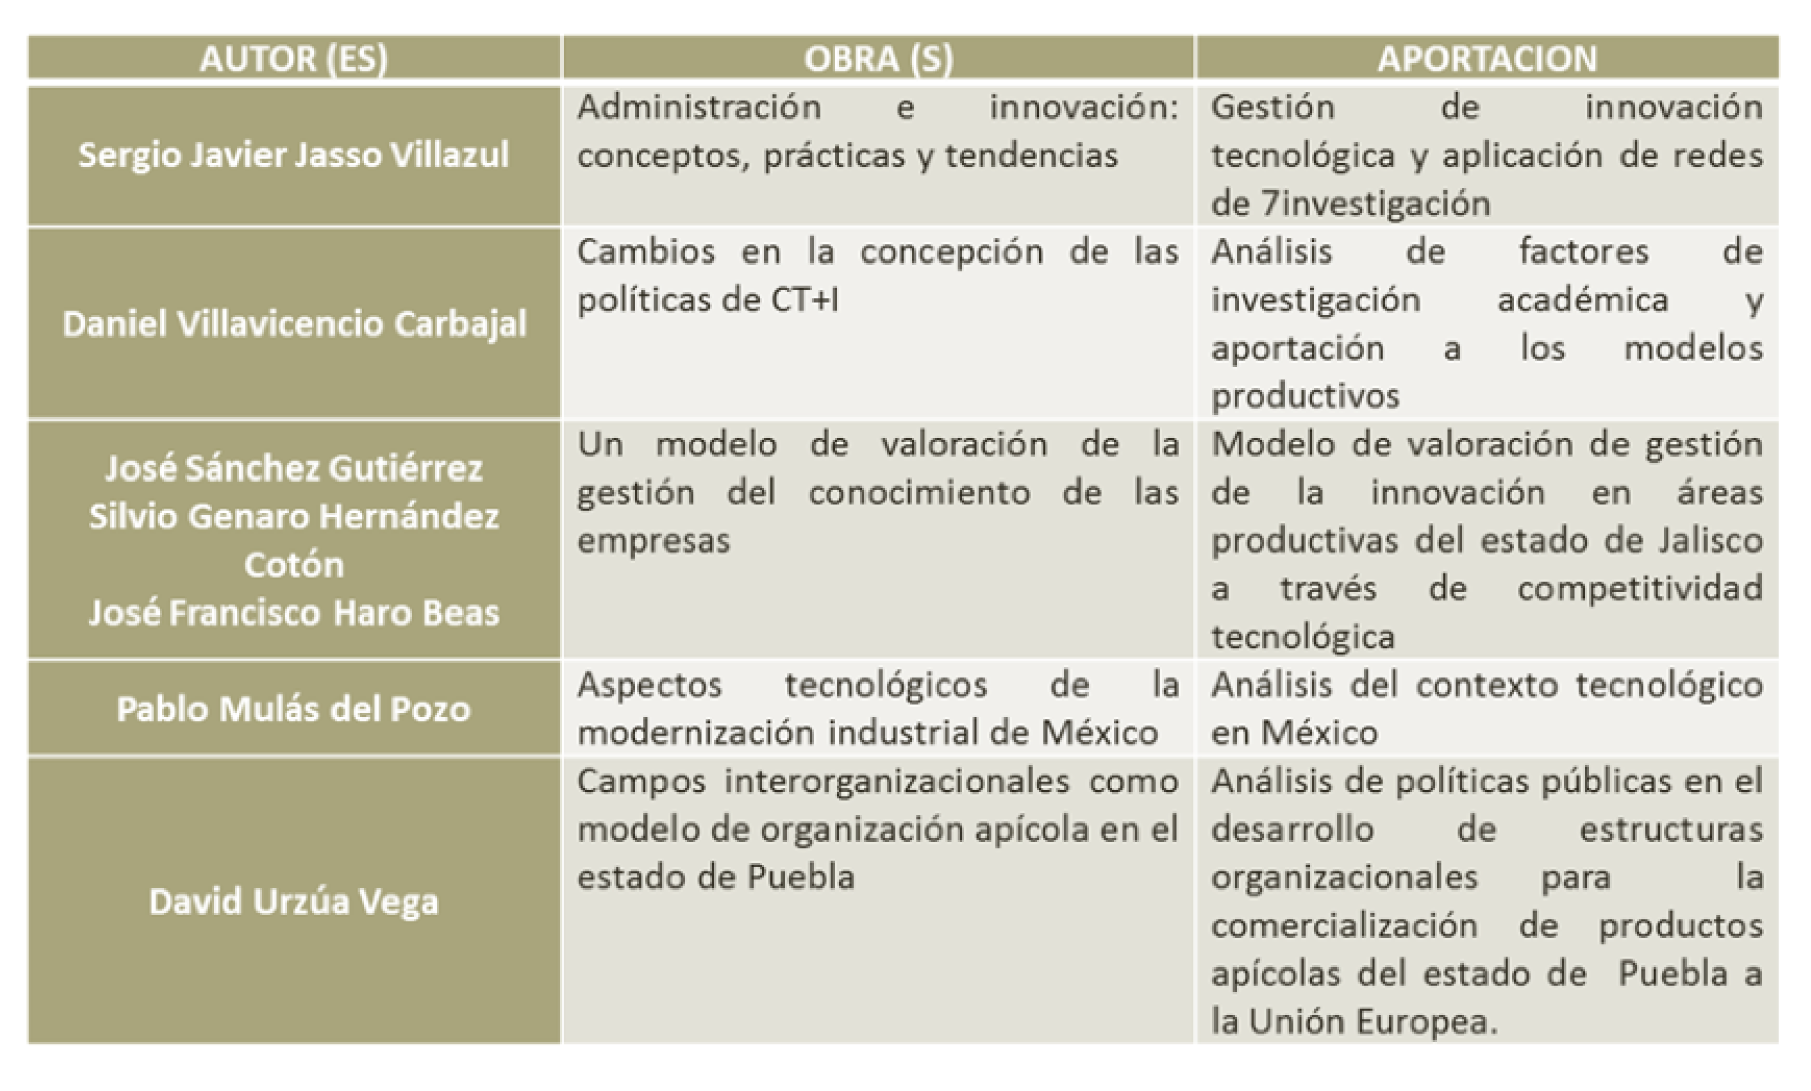 Cuadro comparativo sobre autores mexicanos; sus aportaciones en el área de gestión tecnológica